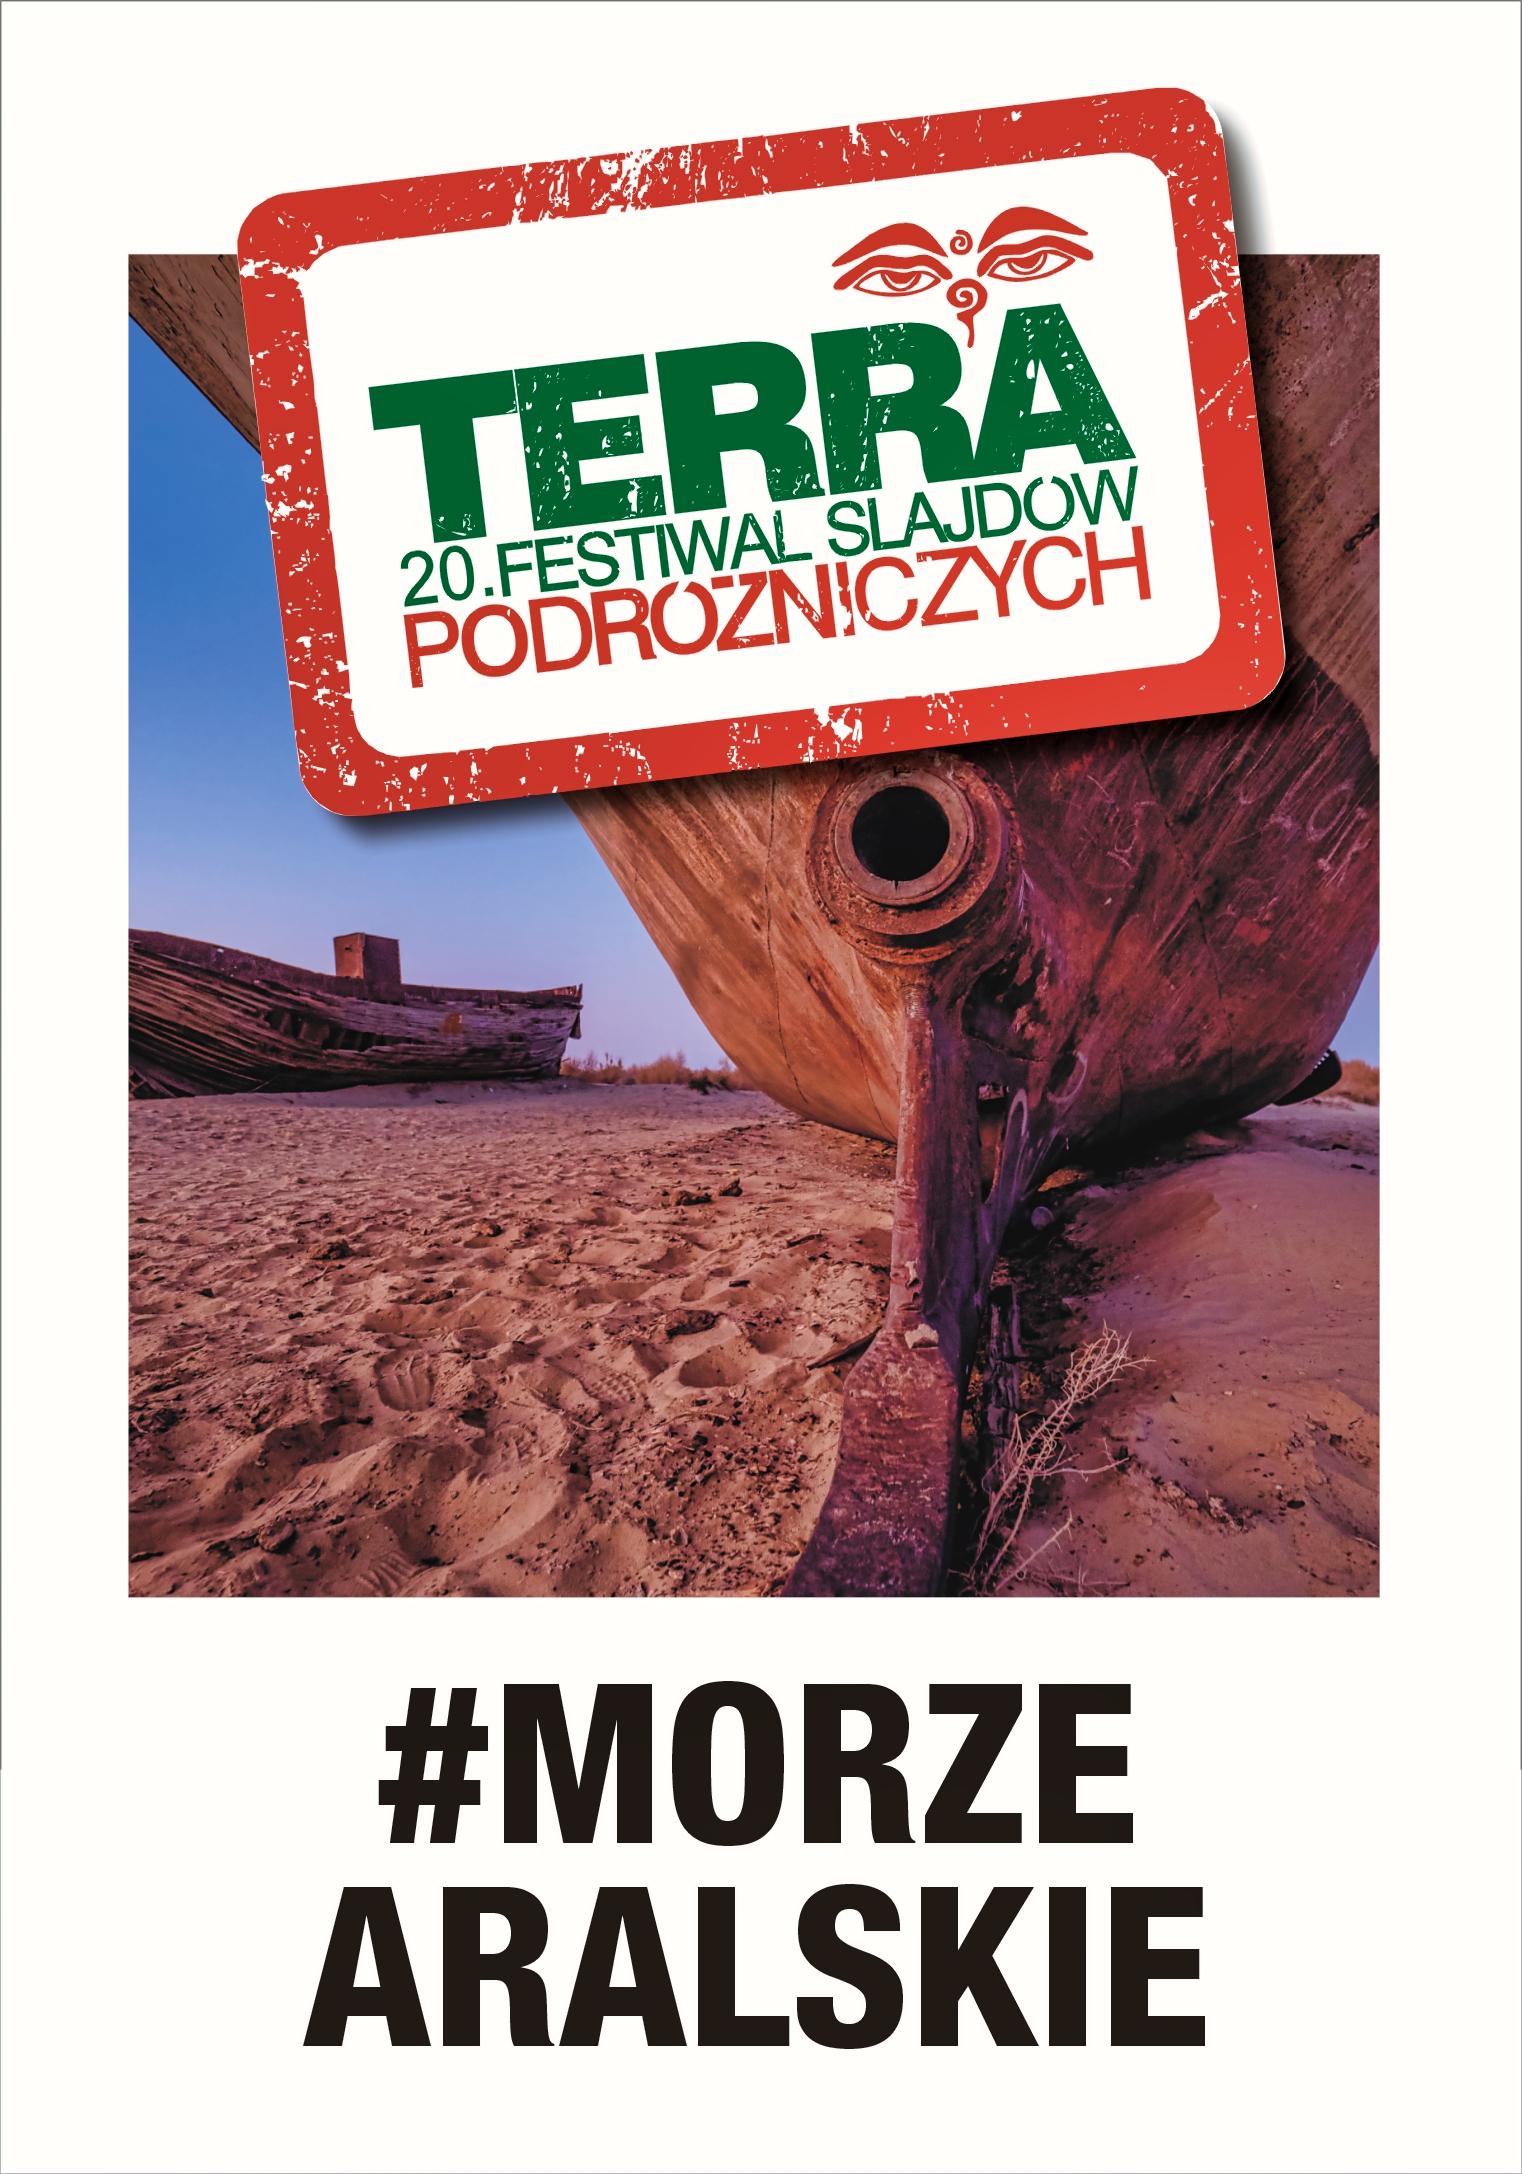 20. Festiwal Slajdów Podróżniczych TERRA: Kropla w morzu – podróż w poszukiwaniu wody w Morzu Aralskim